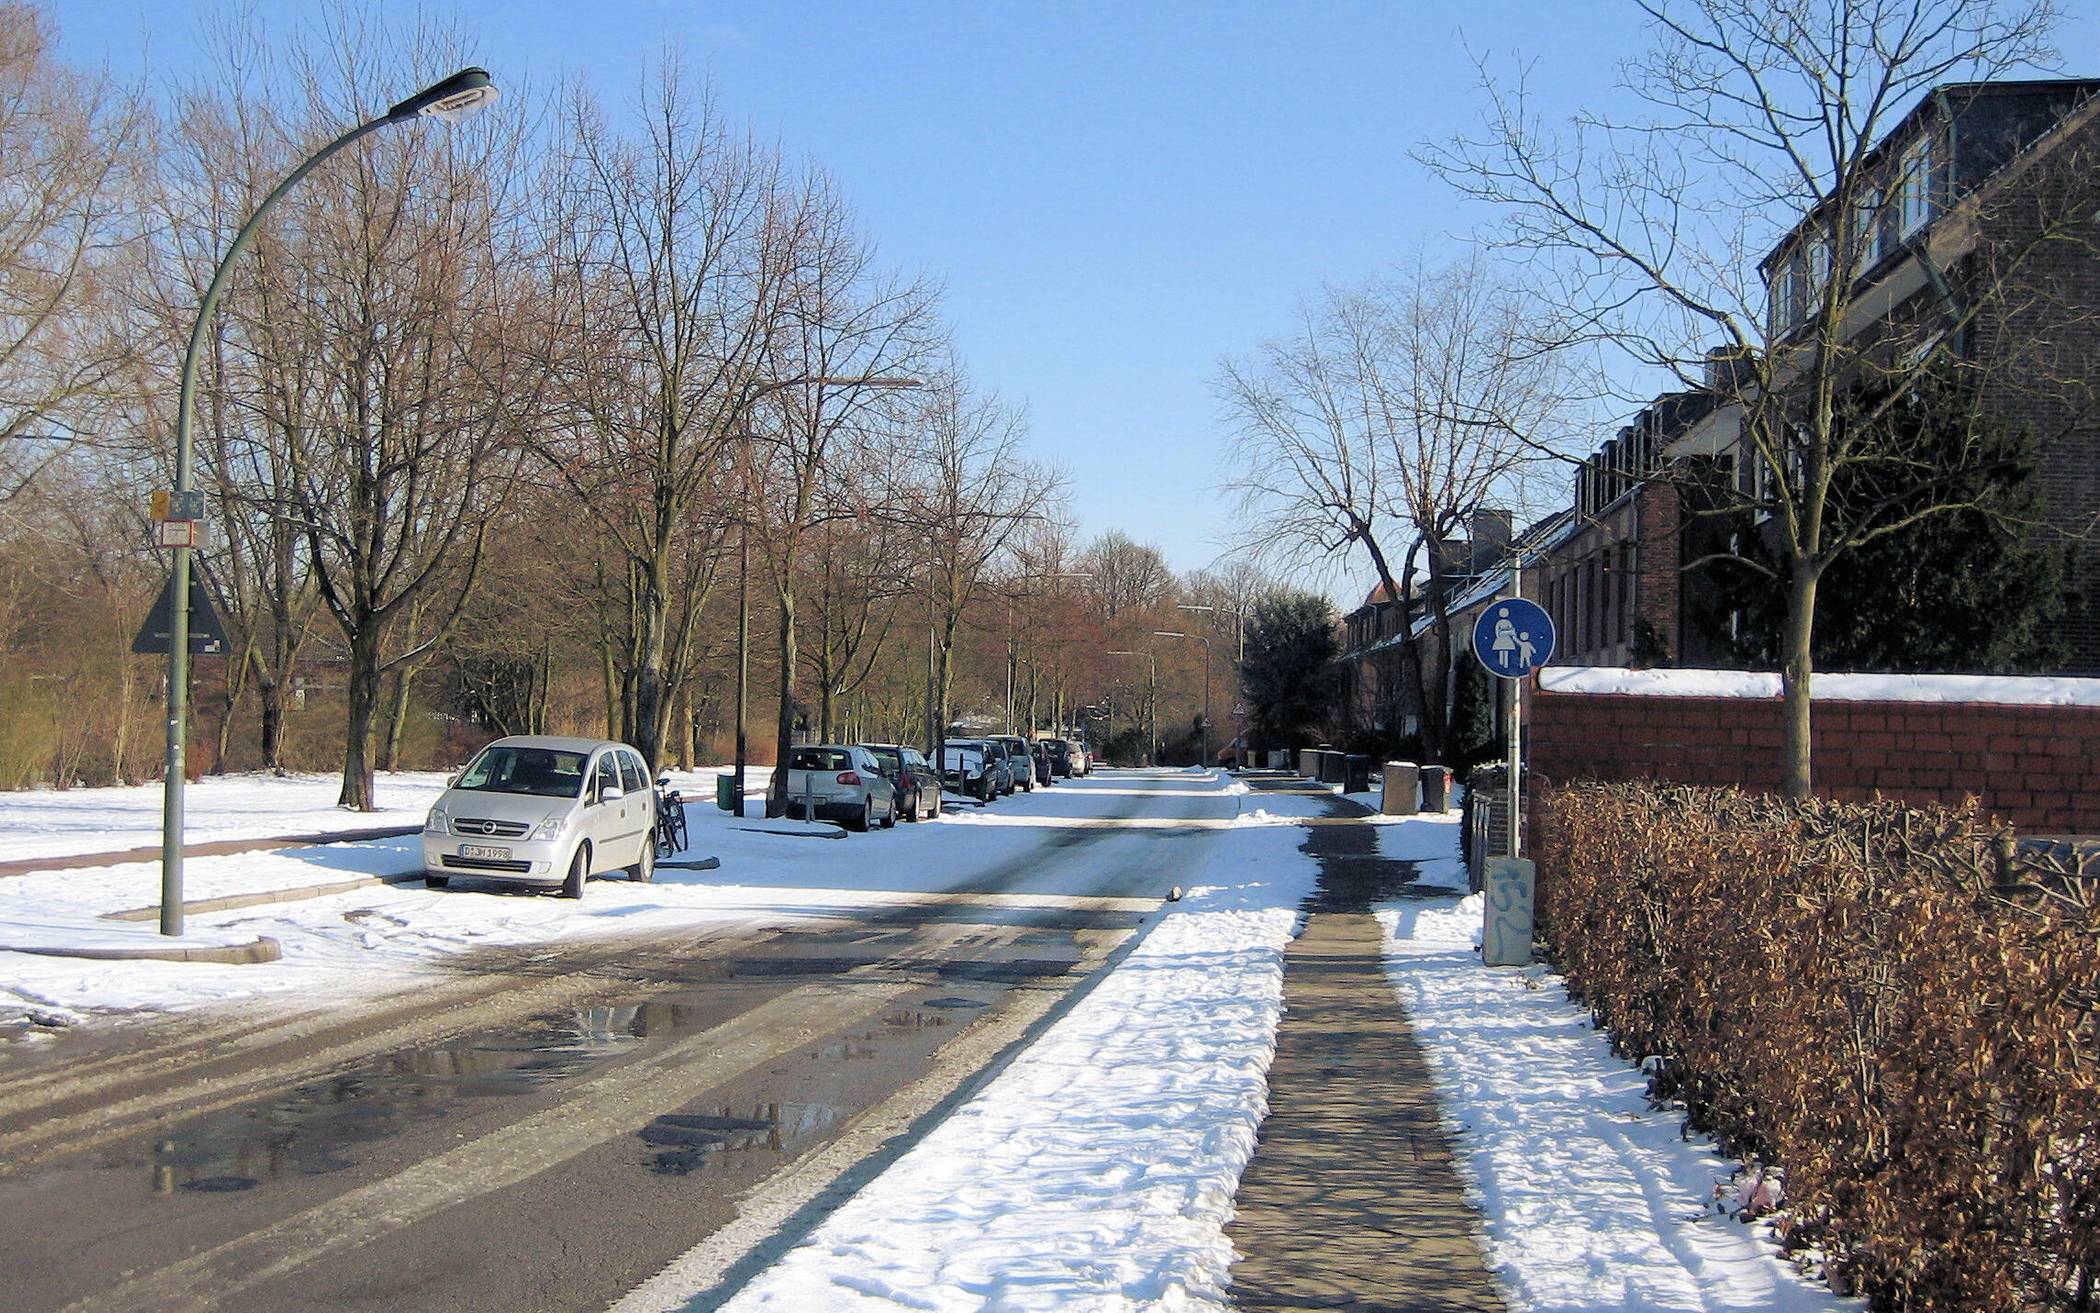 Anlieger haben nach den Vorgaben der städtischen Straßenreinigungssatzung Schnee und Eis auf einer Breite von mindestens einem Meter zu räumen, außerdem Zuwege zu Bushaltestelle oder Depotcontainer.